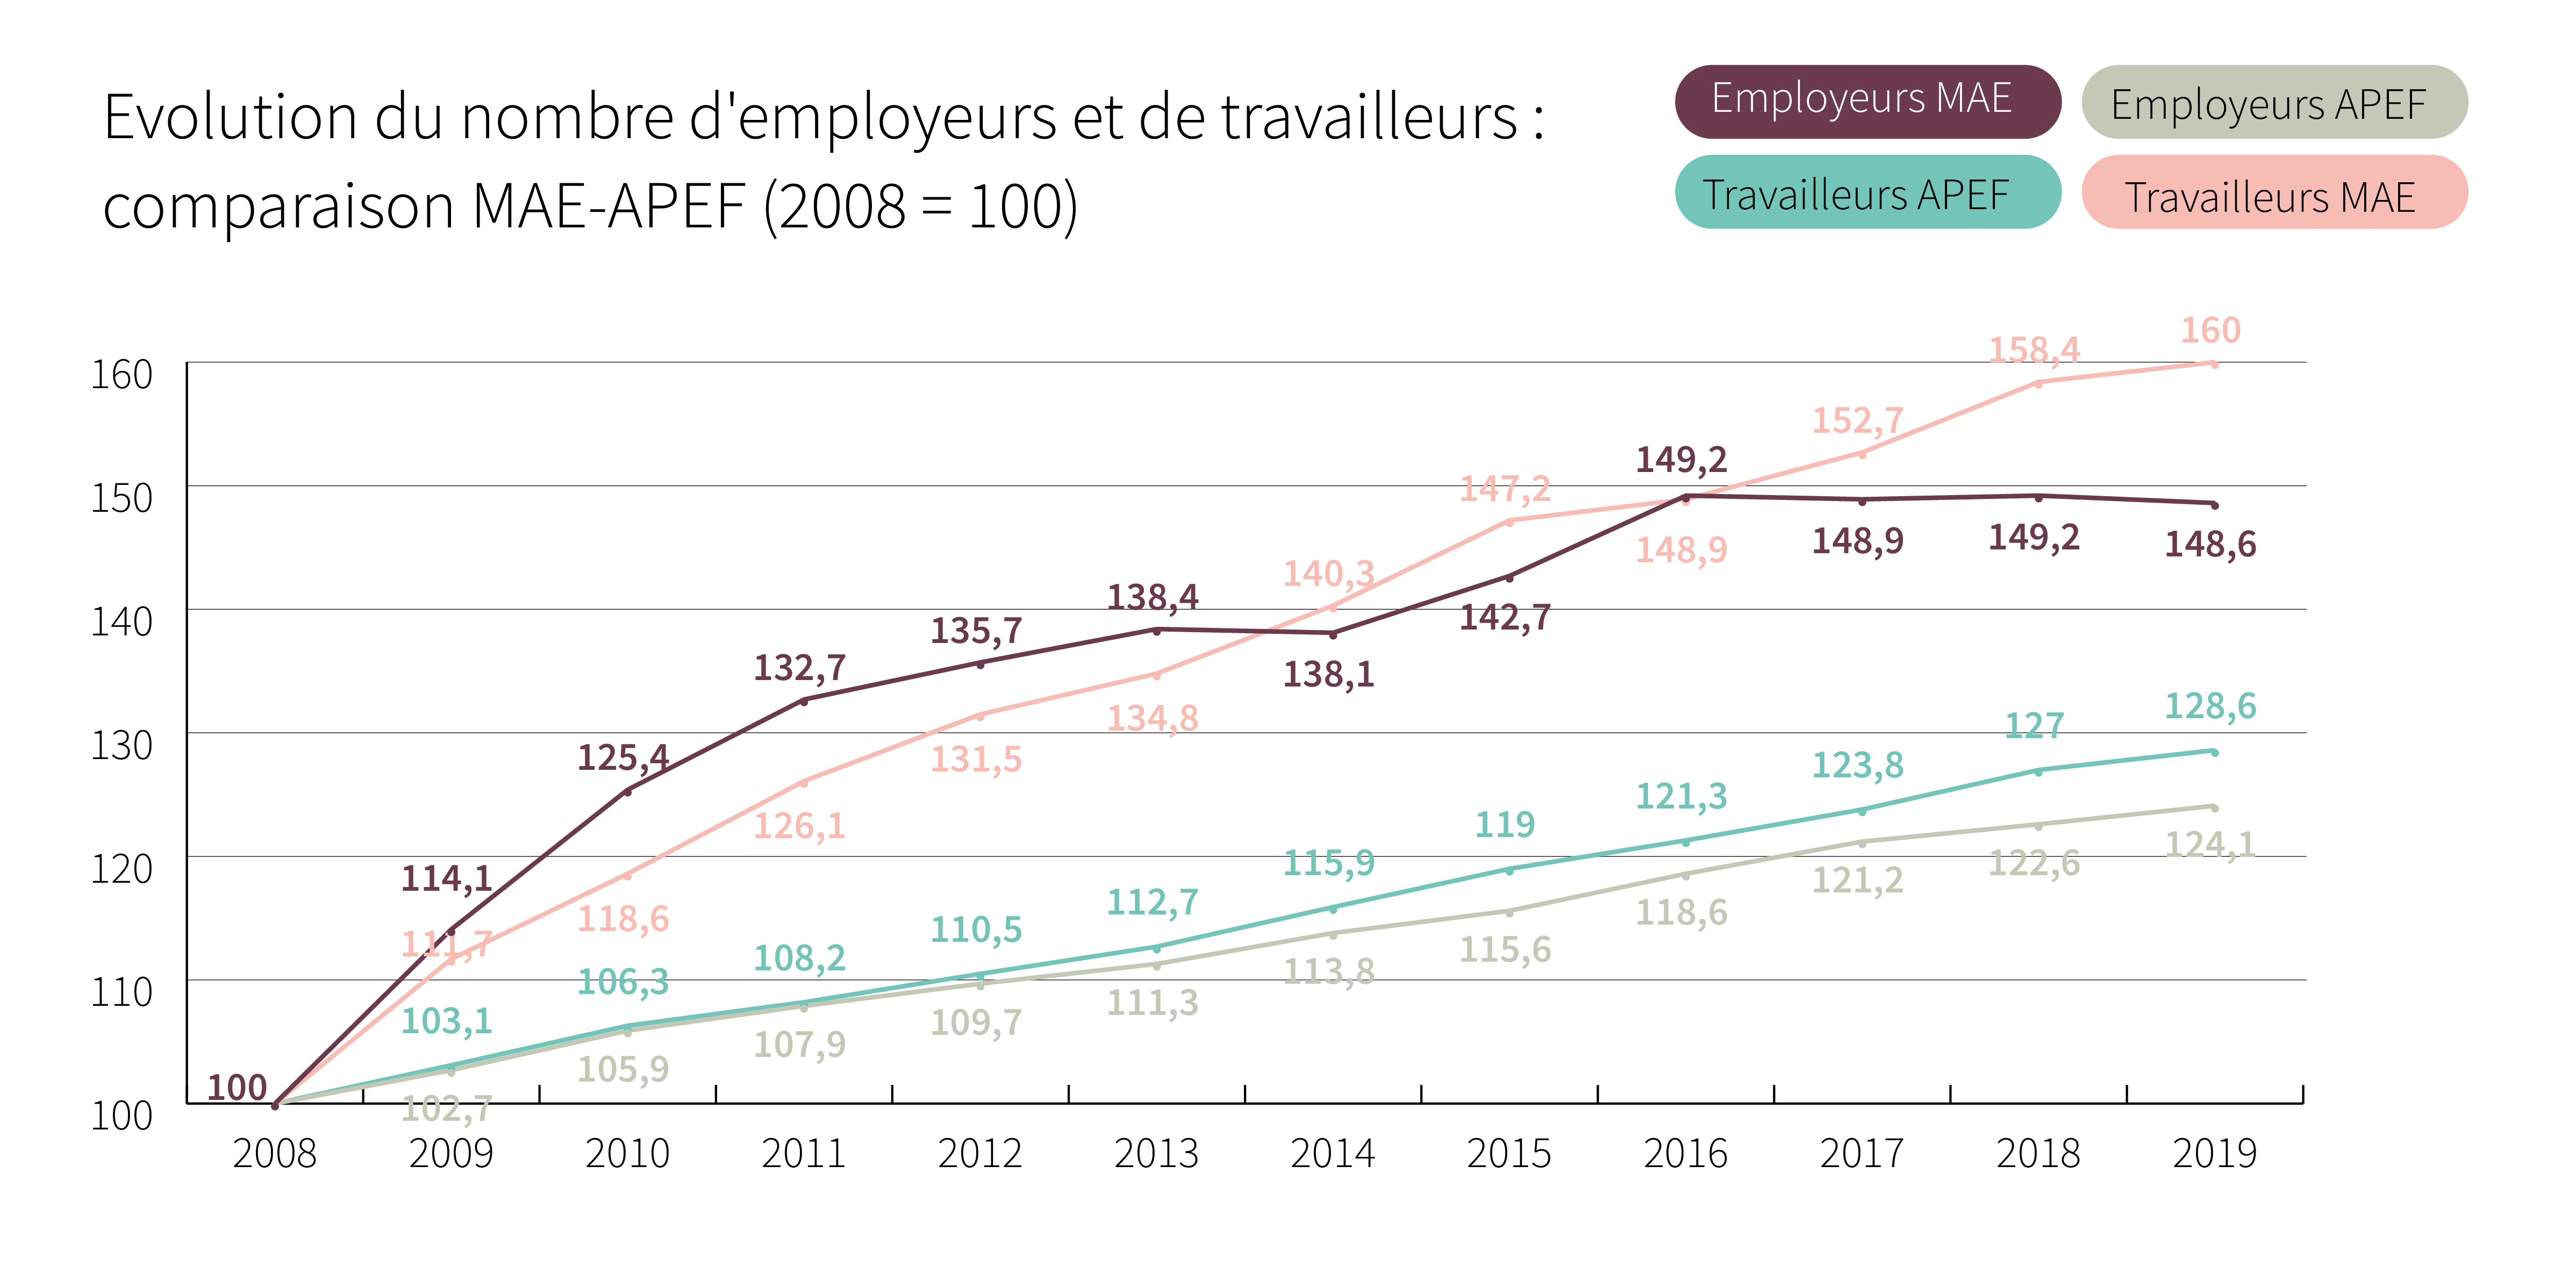 Evolution du nombre d’employeurs et de travailleurs: comparaison MAE-APEF (2008 = 100) - Cliquez pour agrandir